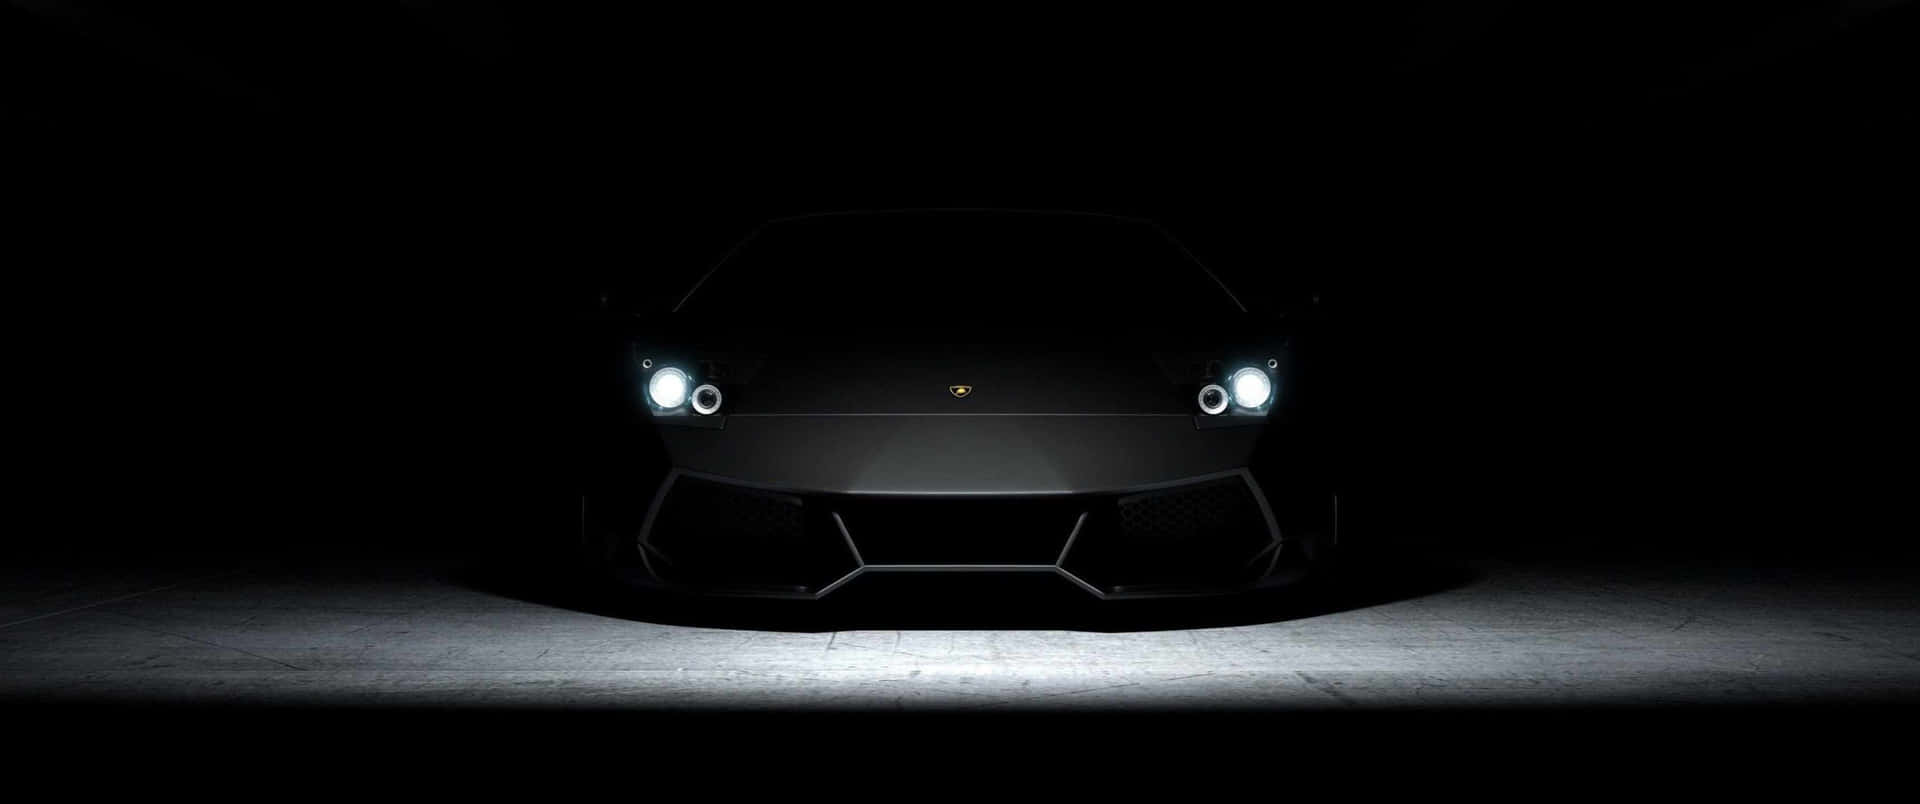 Lamborghinimotorsports: Velocidad Y Estilo En Uno Solo